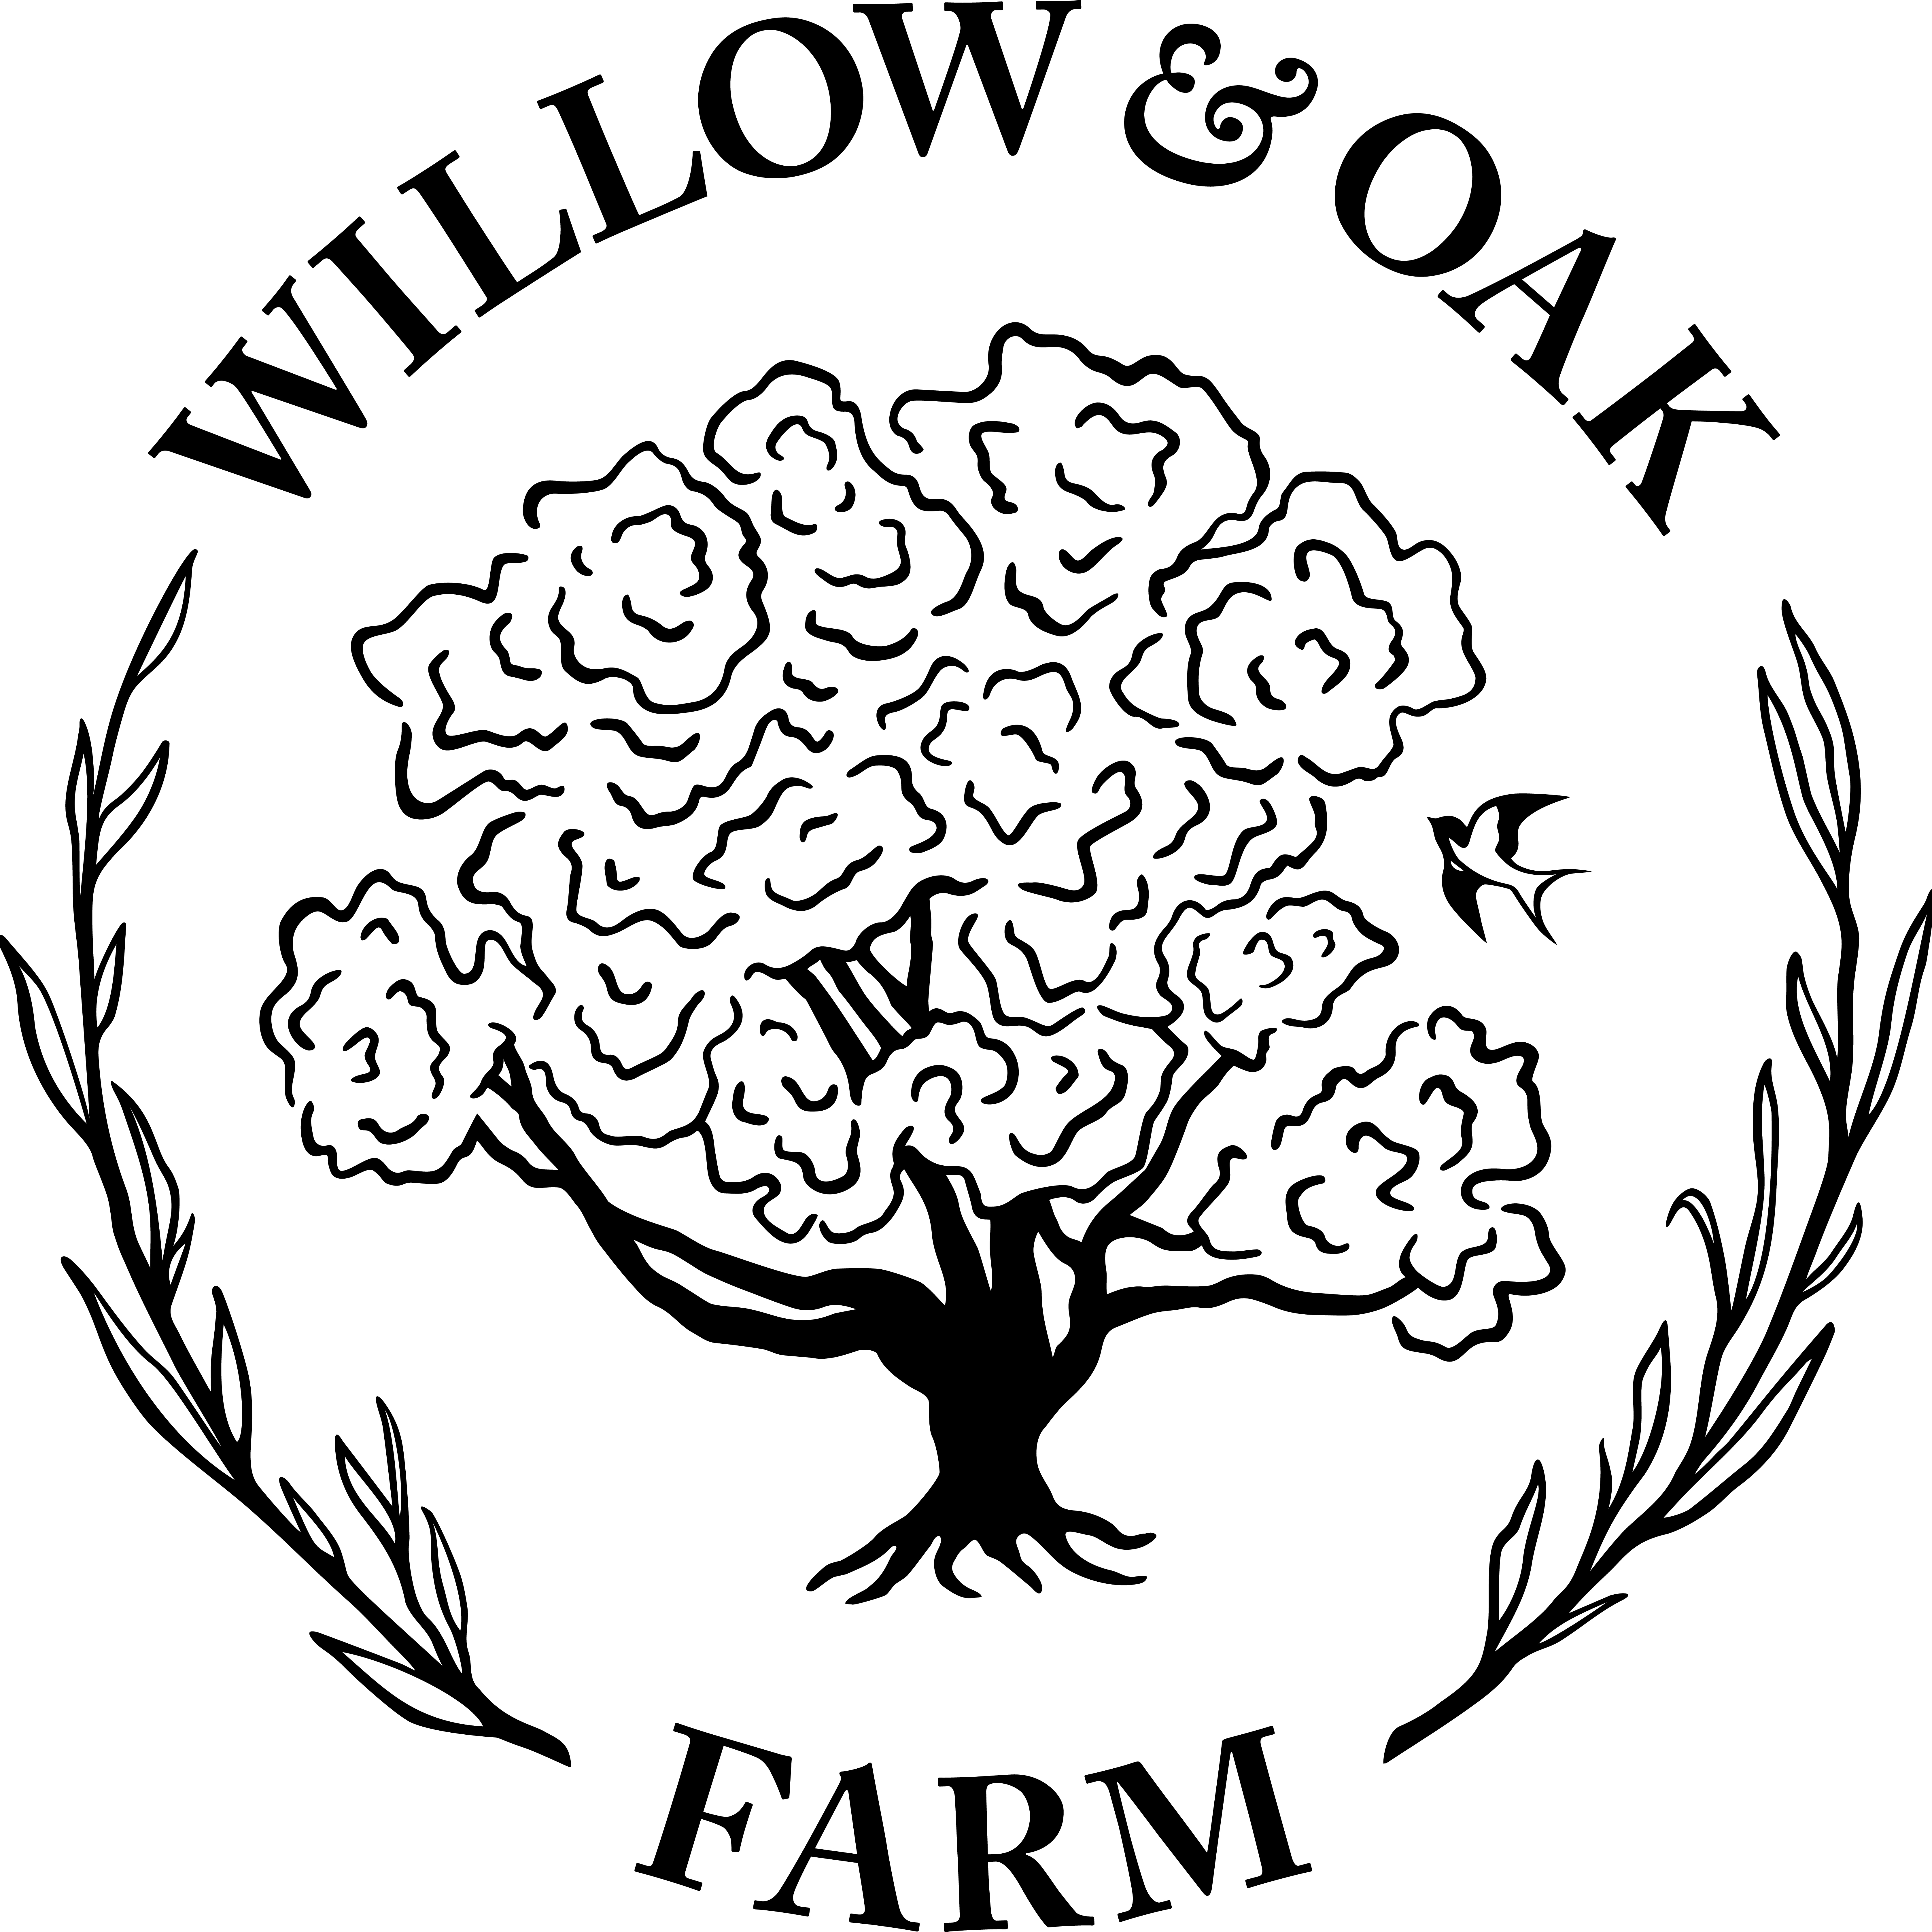 Willow & Oak Farm